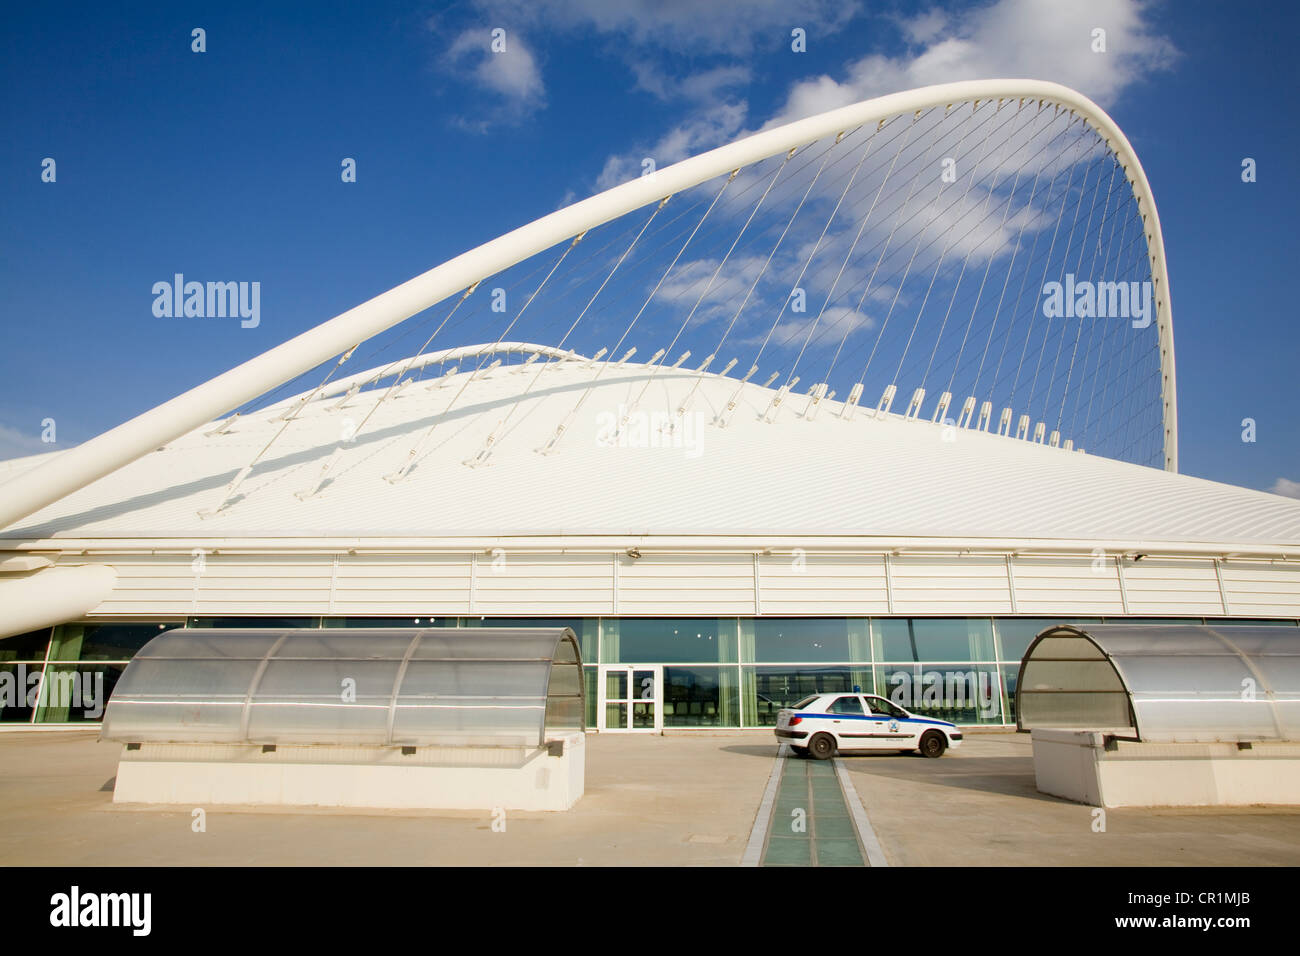 Ática, Grecia, Atenas, Maroussi, OAKA Olympic Stadium construido en 2004 por el arquitecto Santiago Calatrava, velódromo Foto de stock